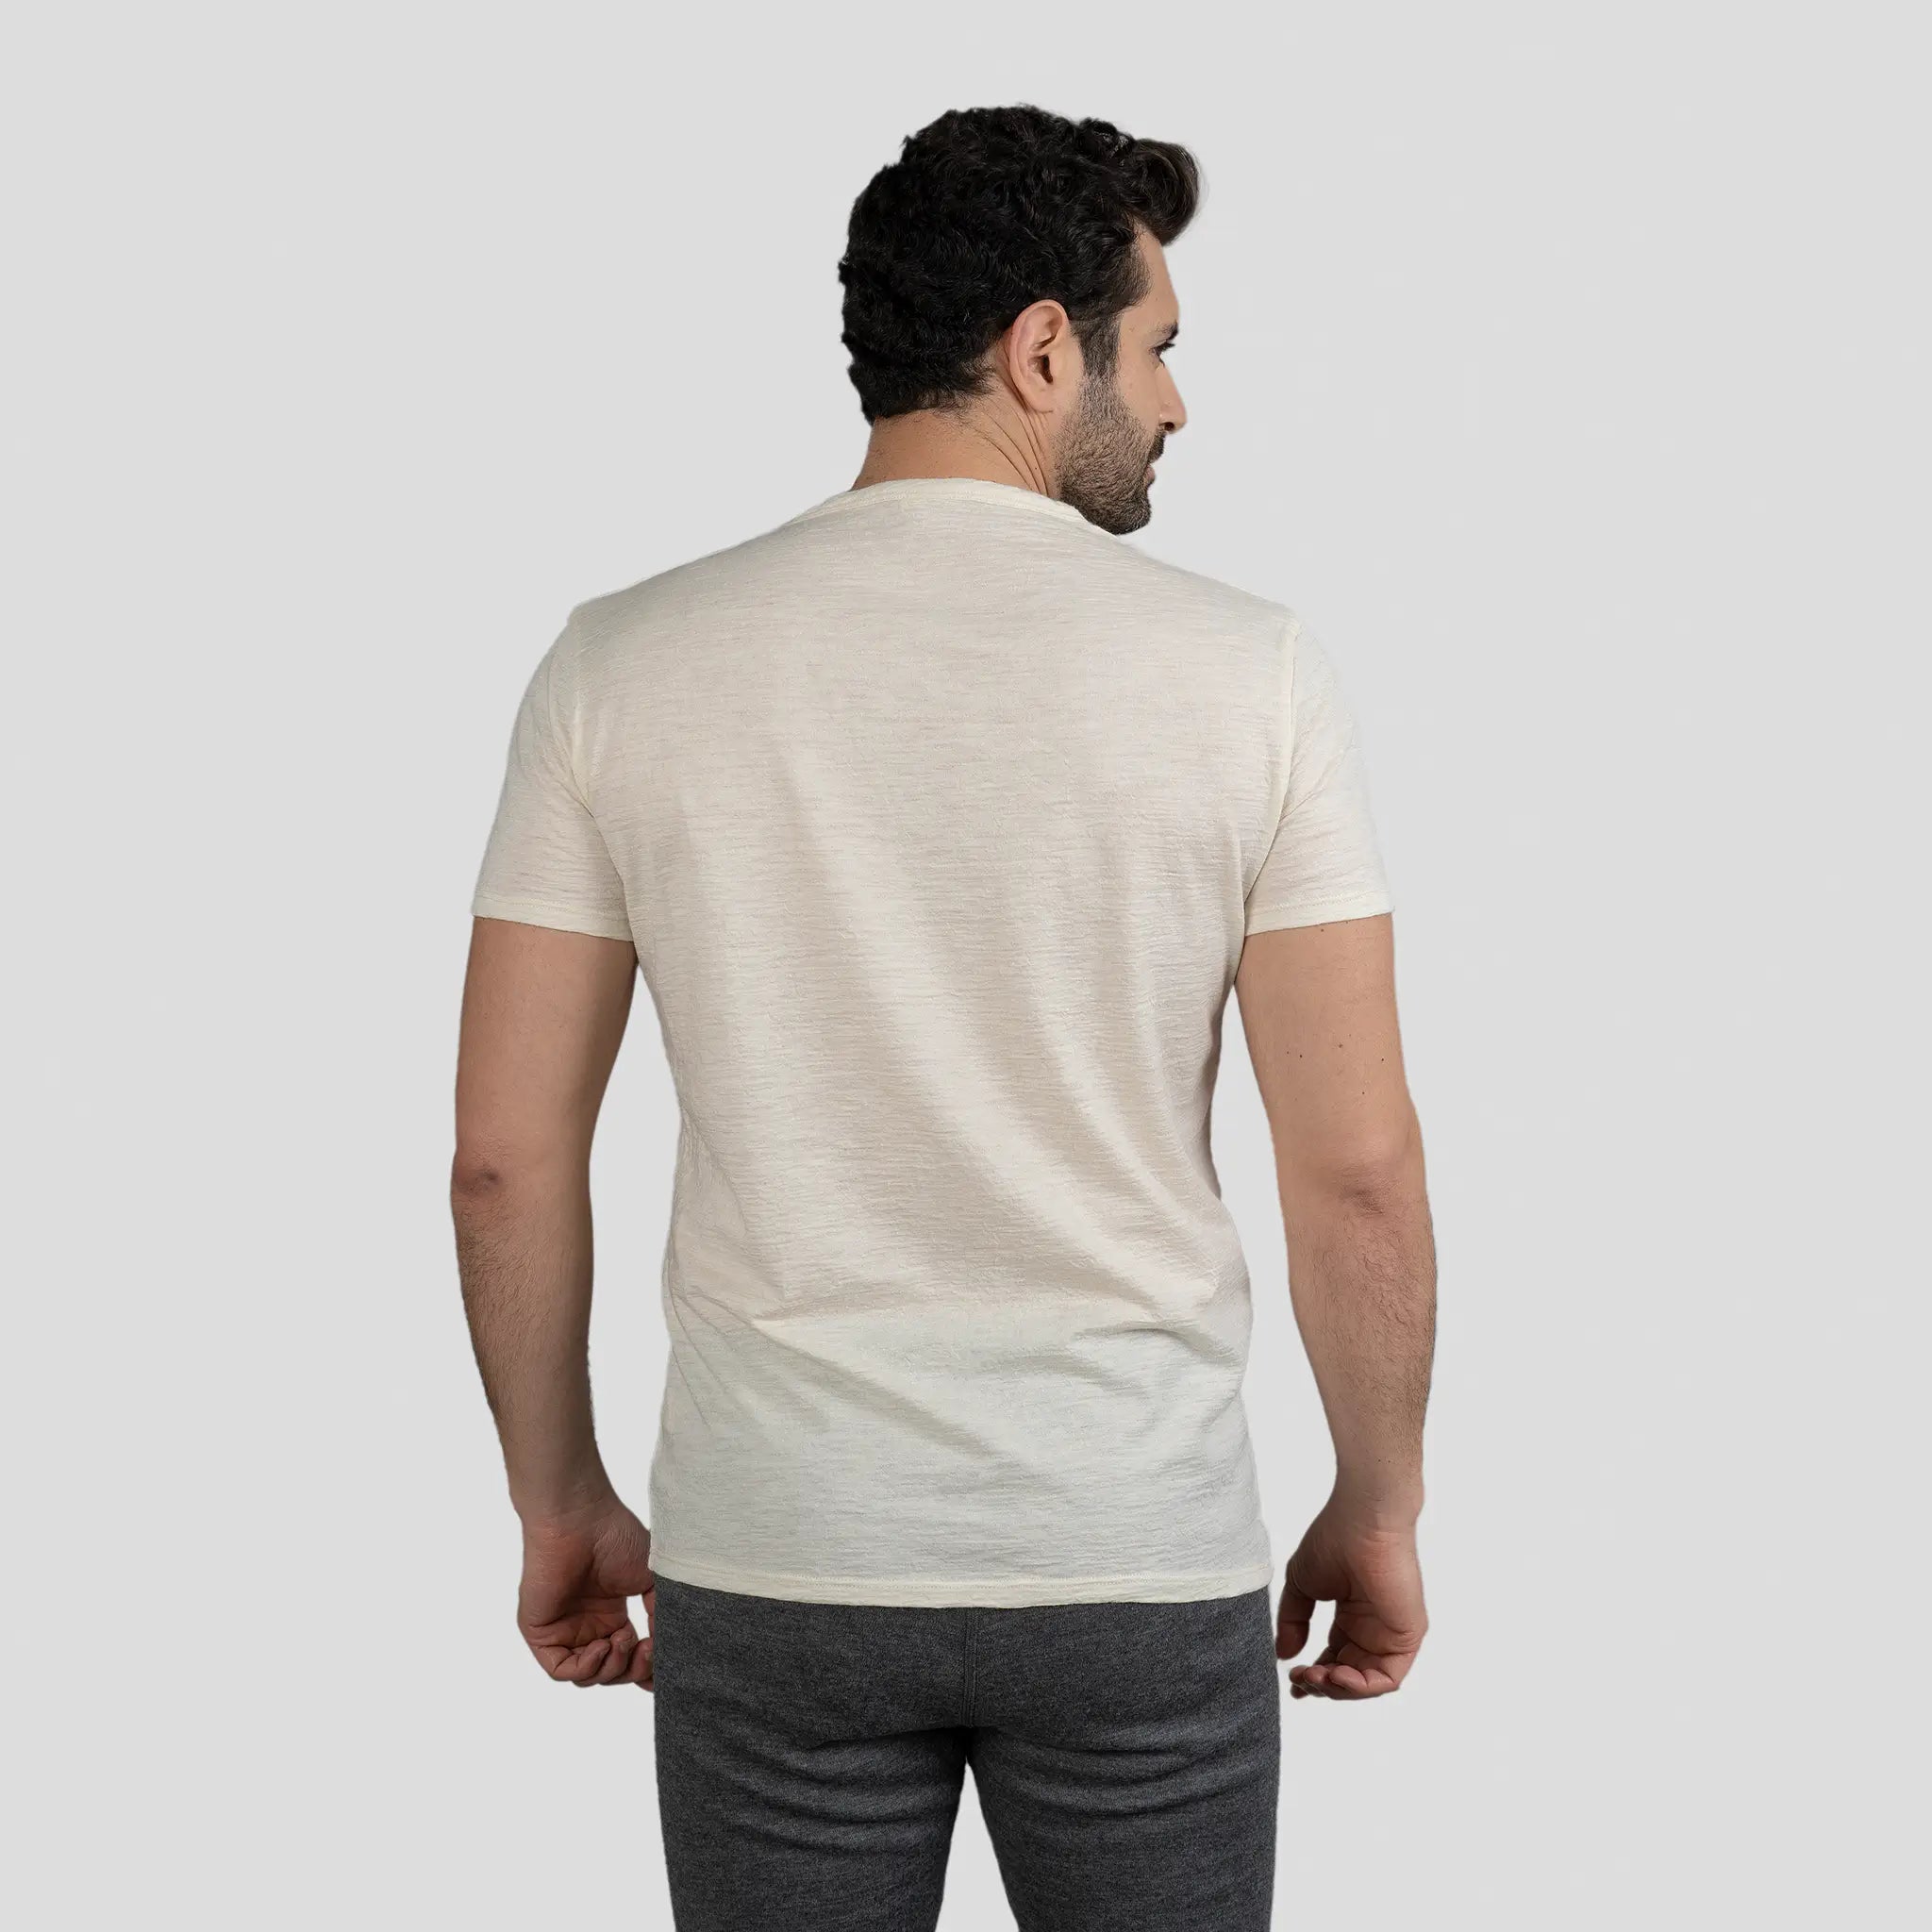 mens active comfort vneck tshirt color natural white